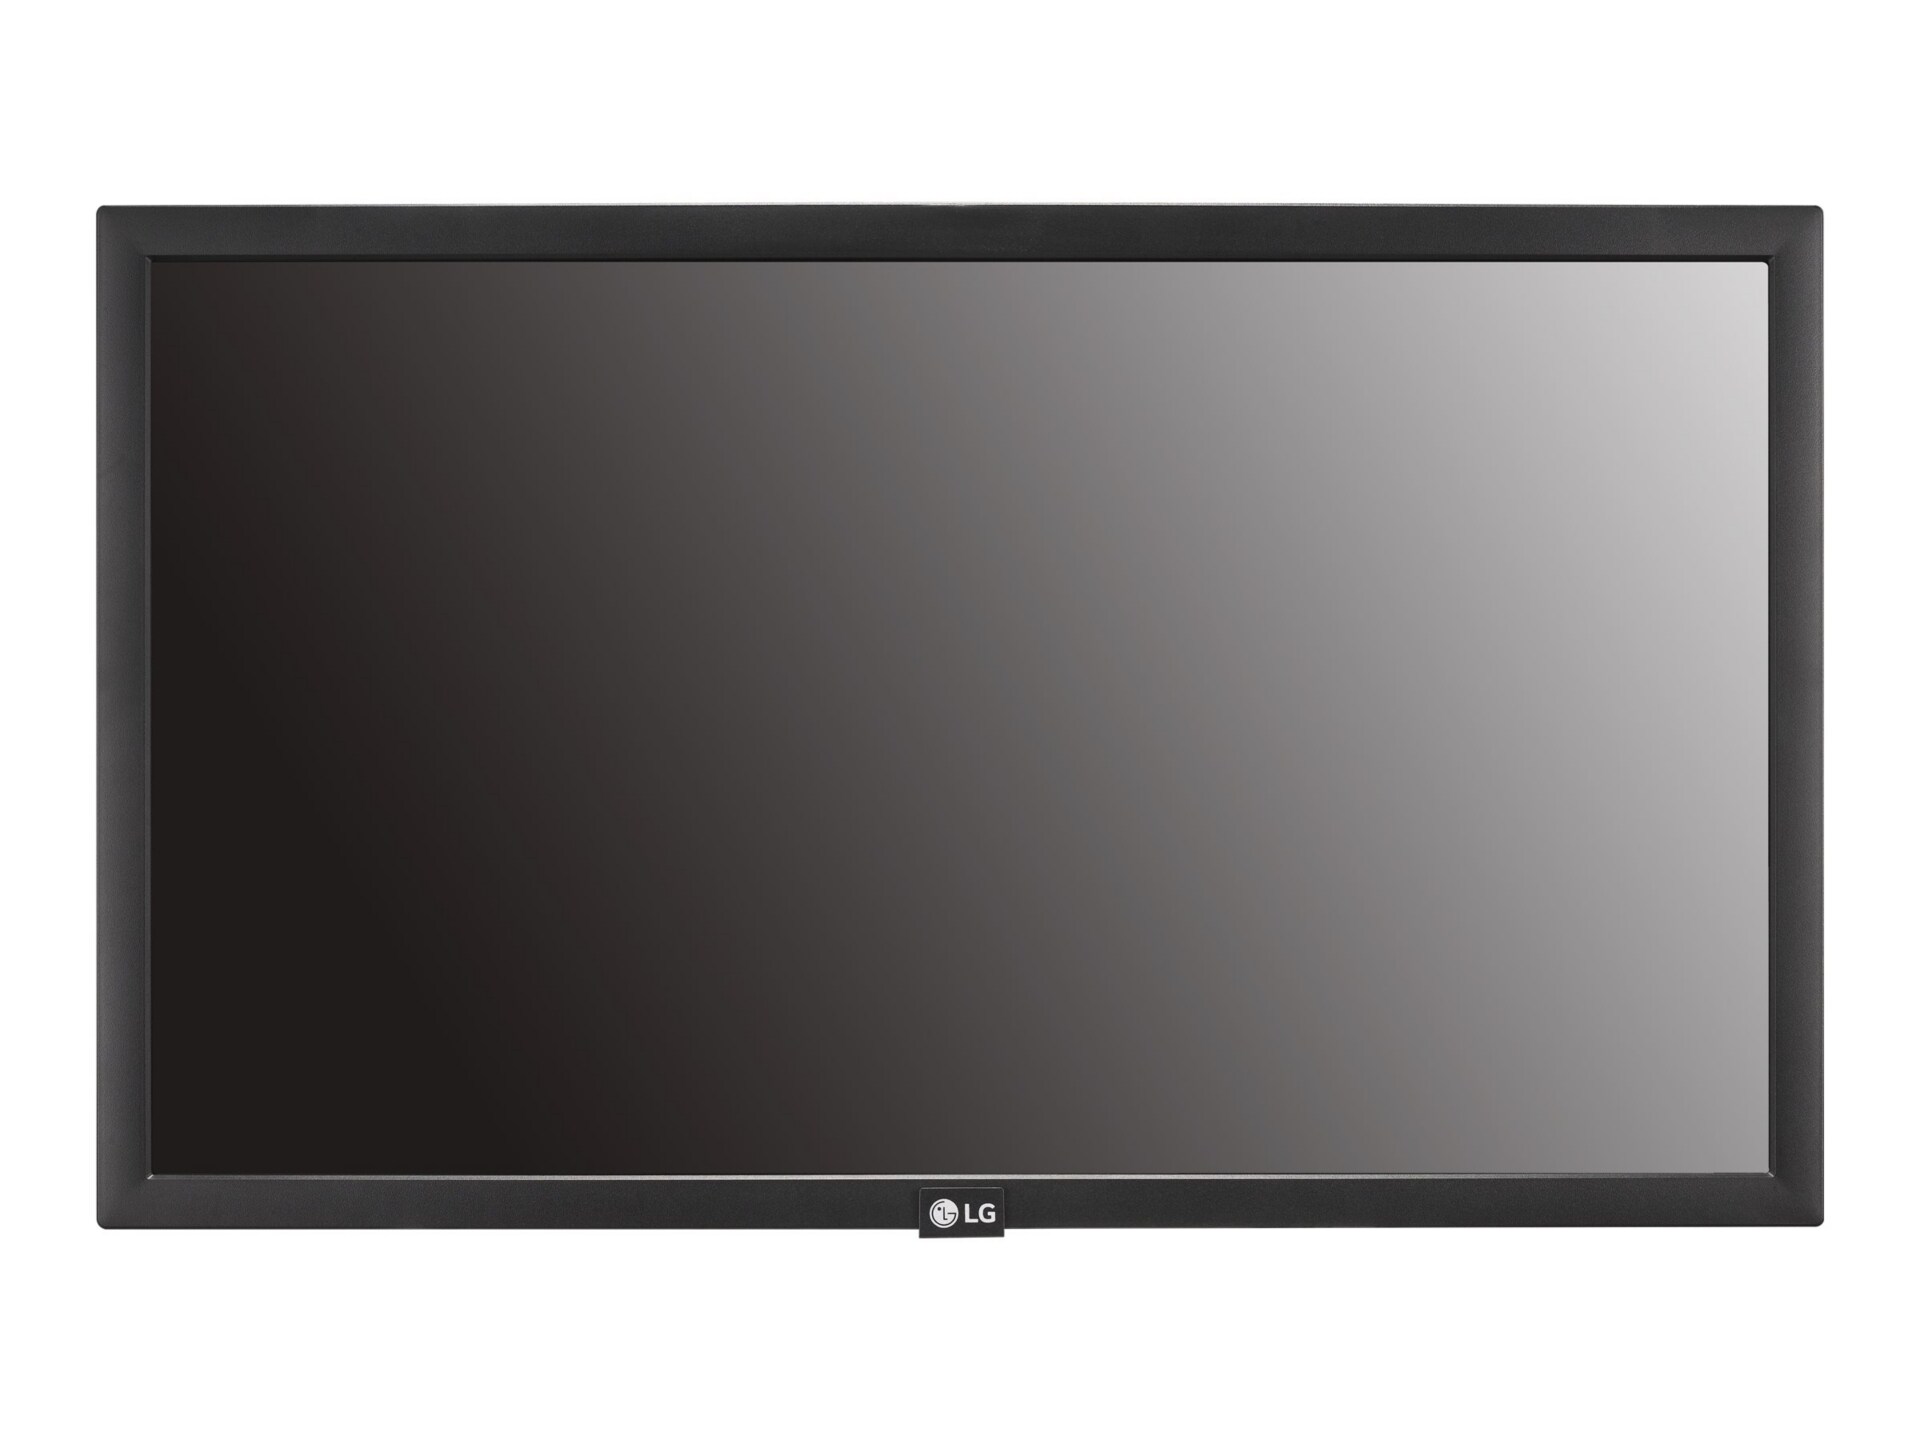 LG 22SM3B-B SM3B - 22" Class (21.5" viewable) LED display - Full HD